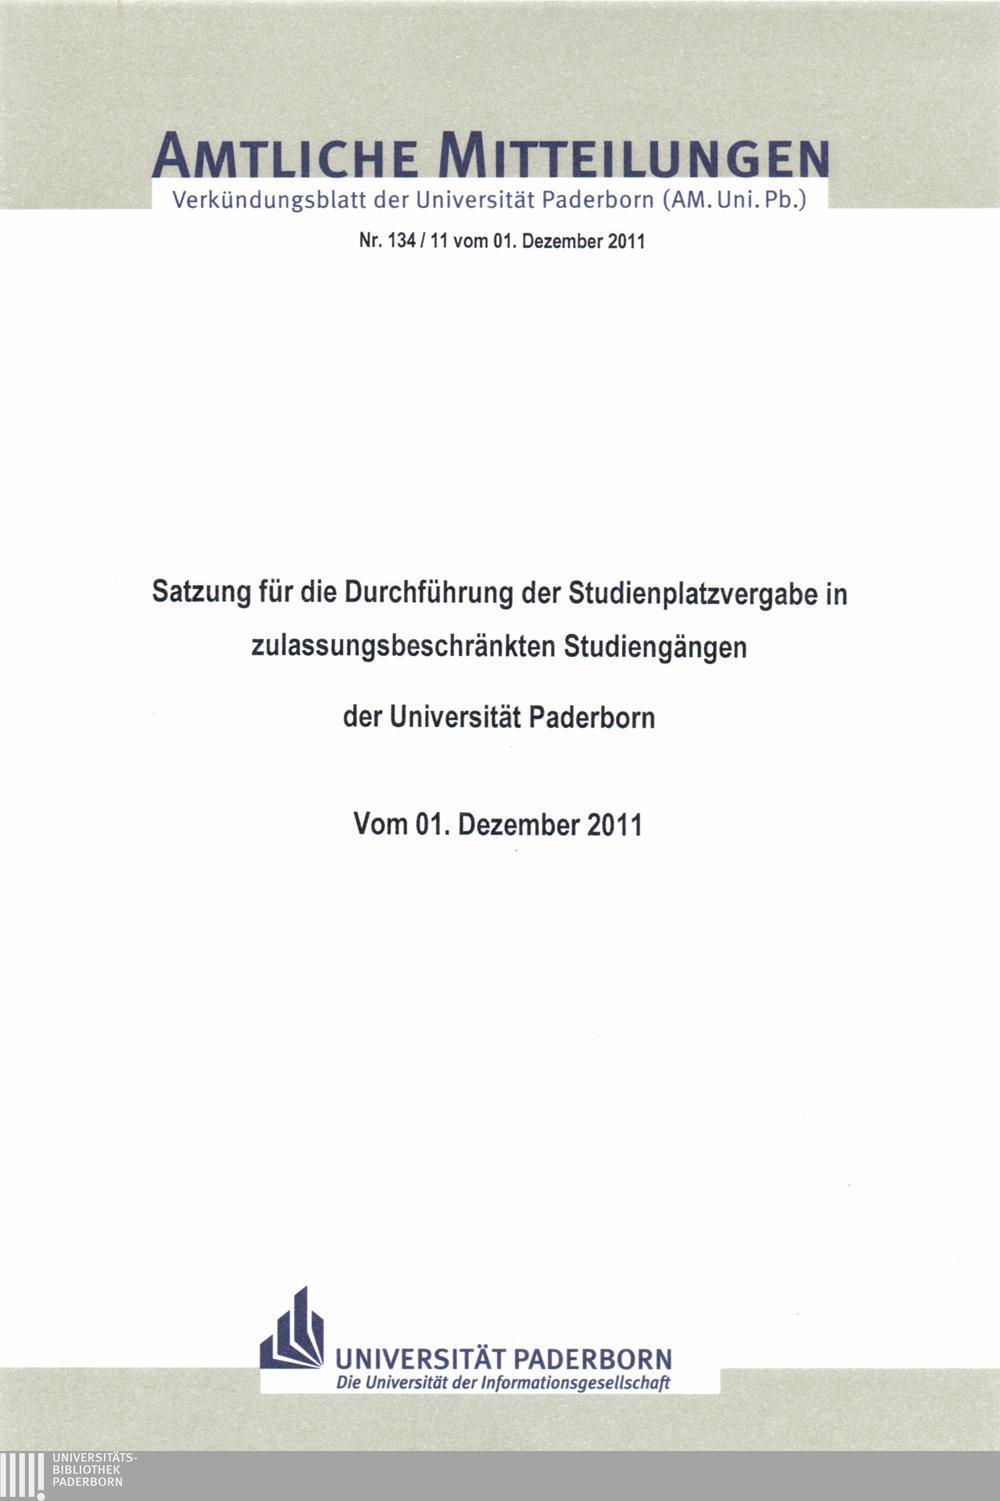 Amtliche Mitteilungen Verkündungsblatt der Universität Paderborn (AM. Uni. Pb.) Nr. 134/11 vom 01.